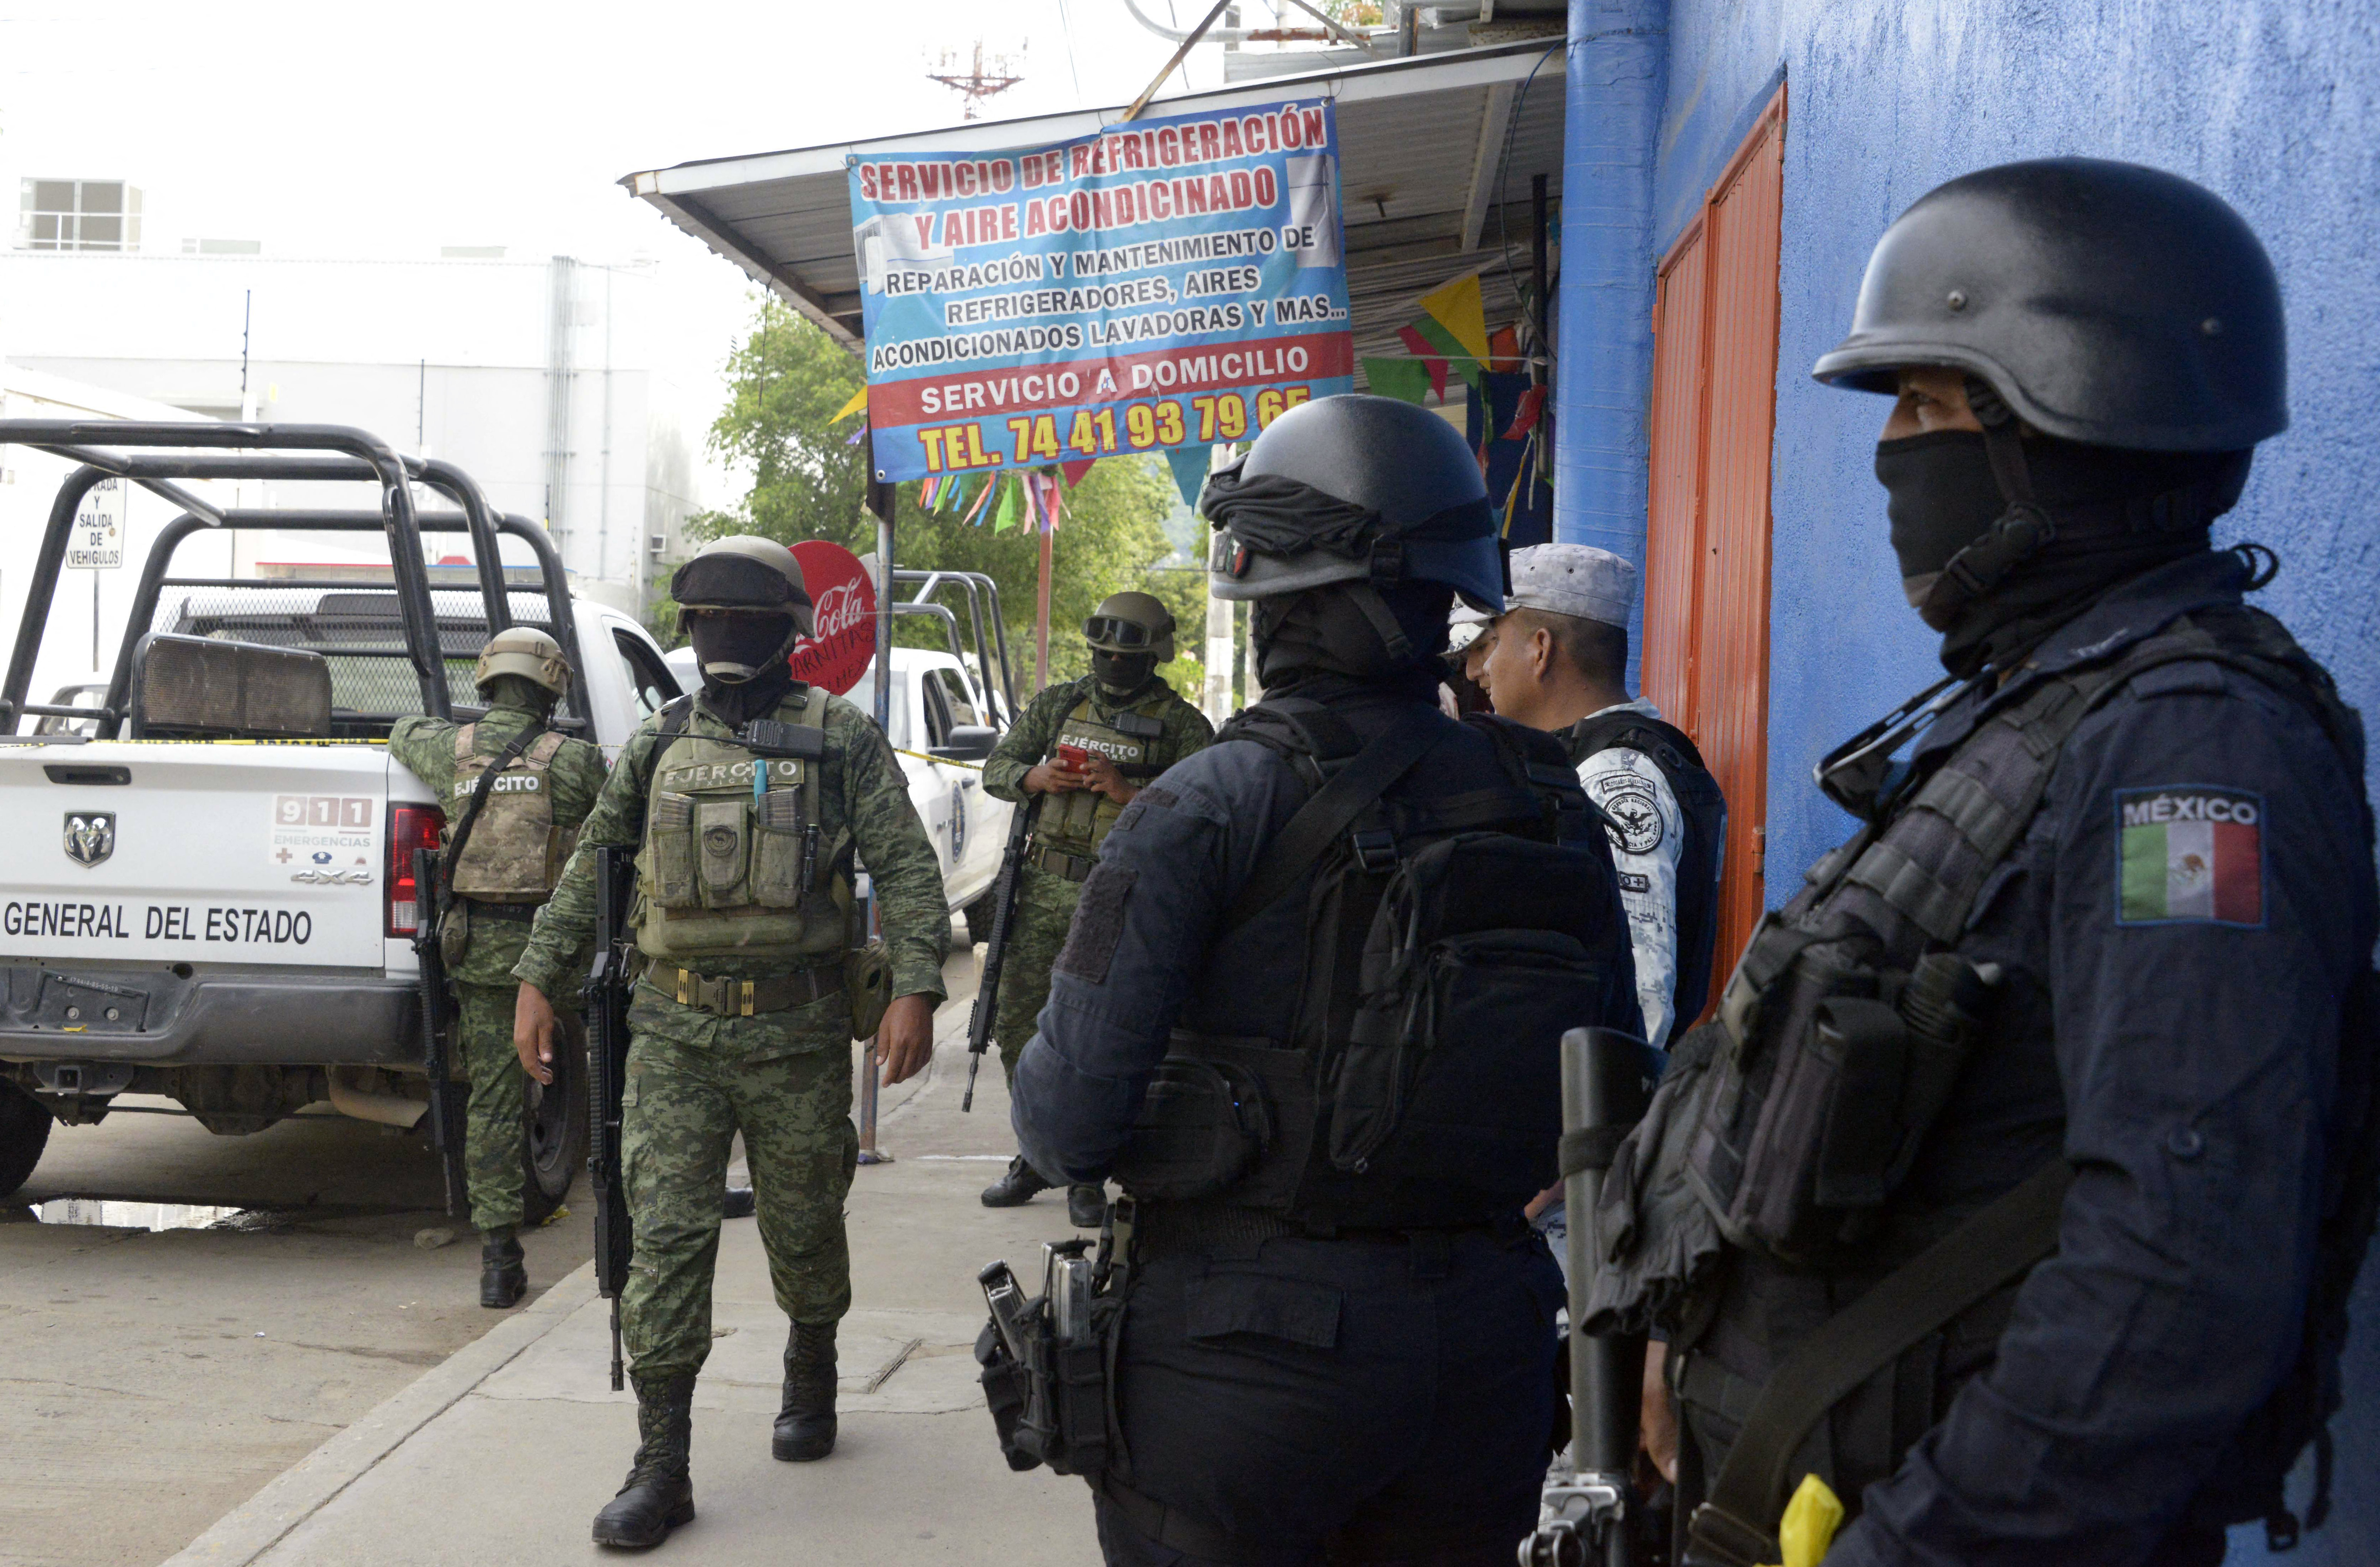 Soldaten der mexikanischen Armee und Staatspolizei am Ort der Hinrichtung eines führenden Journalisten am vergangenen Wochenende